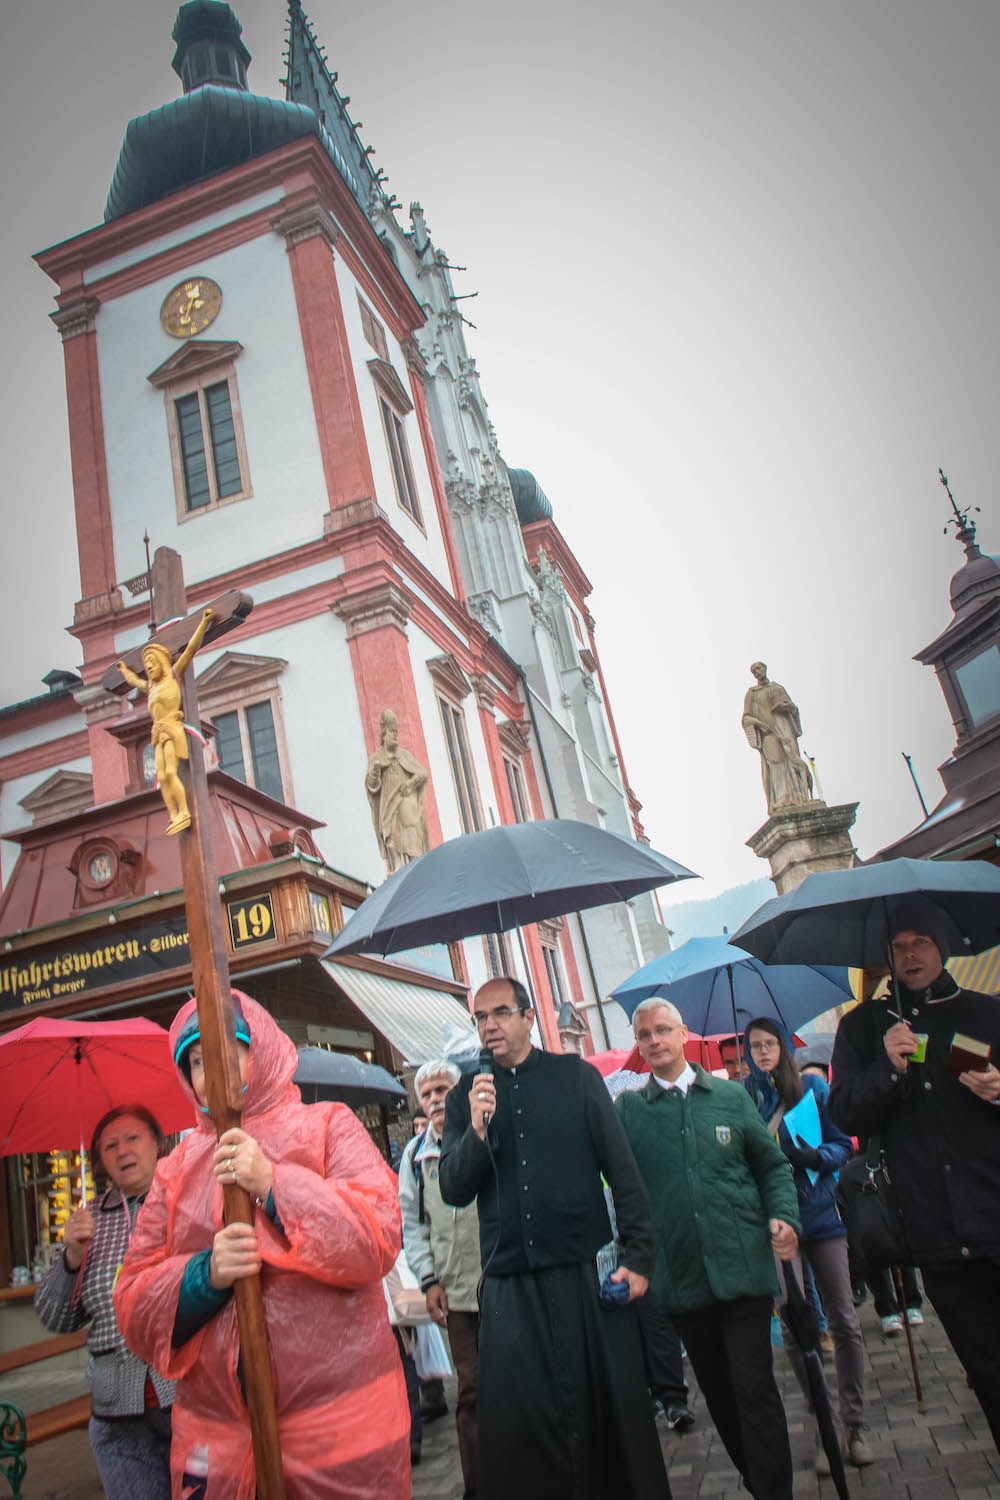 Viele hunderte Pilger feierten heute mit Dr. János Szekely, Bischof von Szombathely, anlässlich der traditionellen Ungarischen Wallfahrt die heilige Messe in der Basilika.